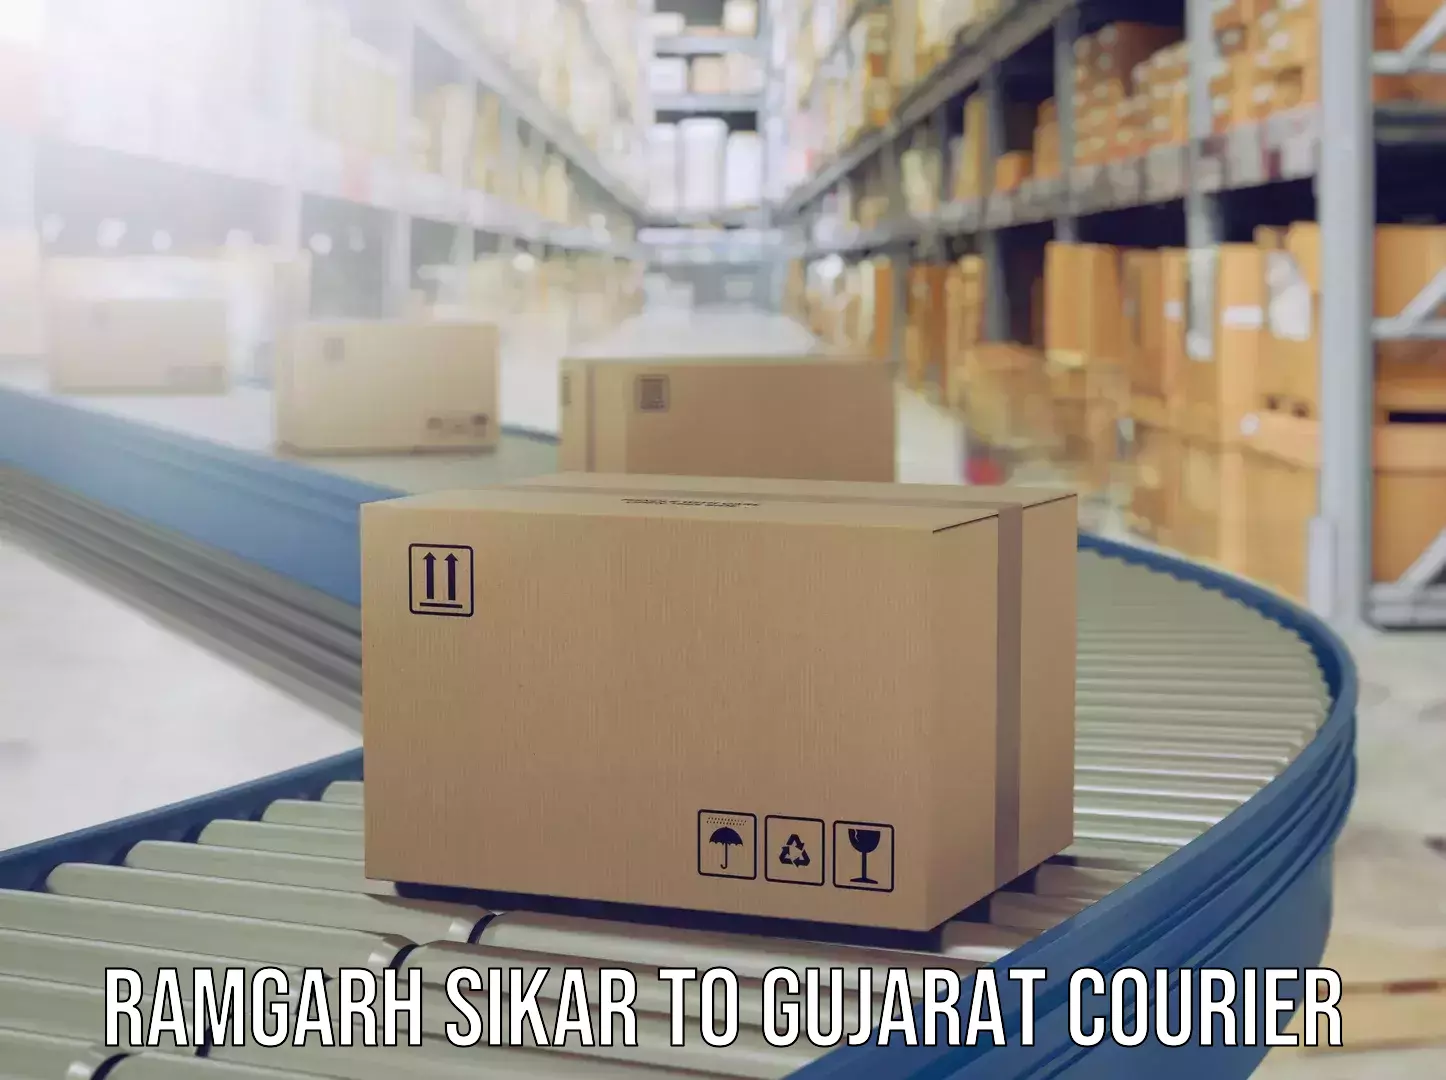 Door-to-door baggage service Ramgarh Sikar to Rapar